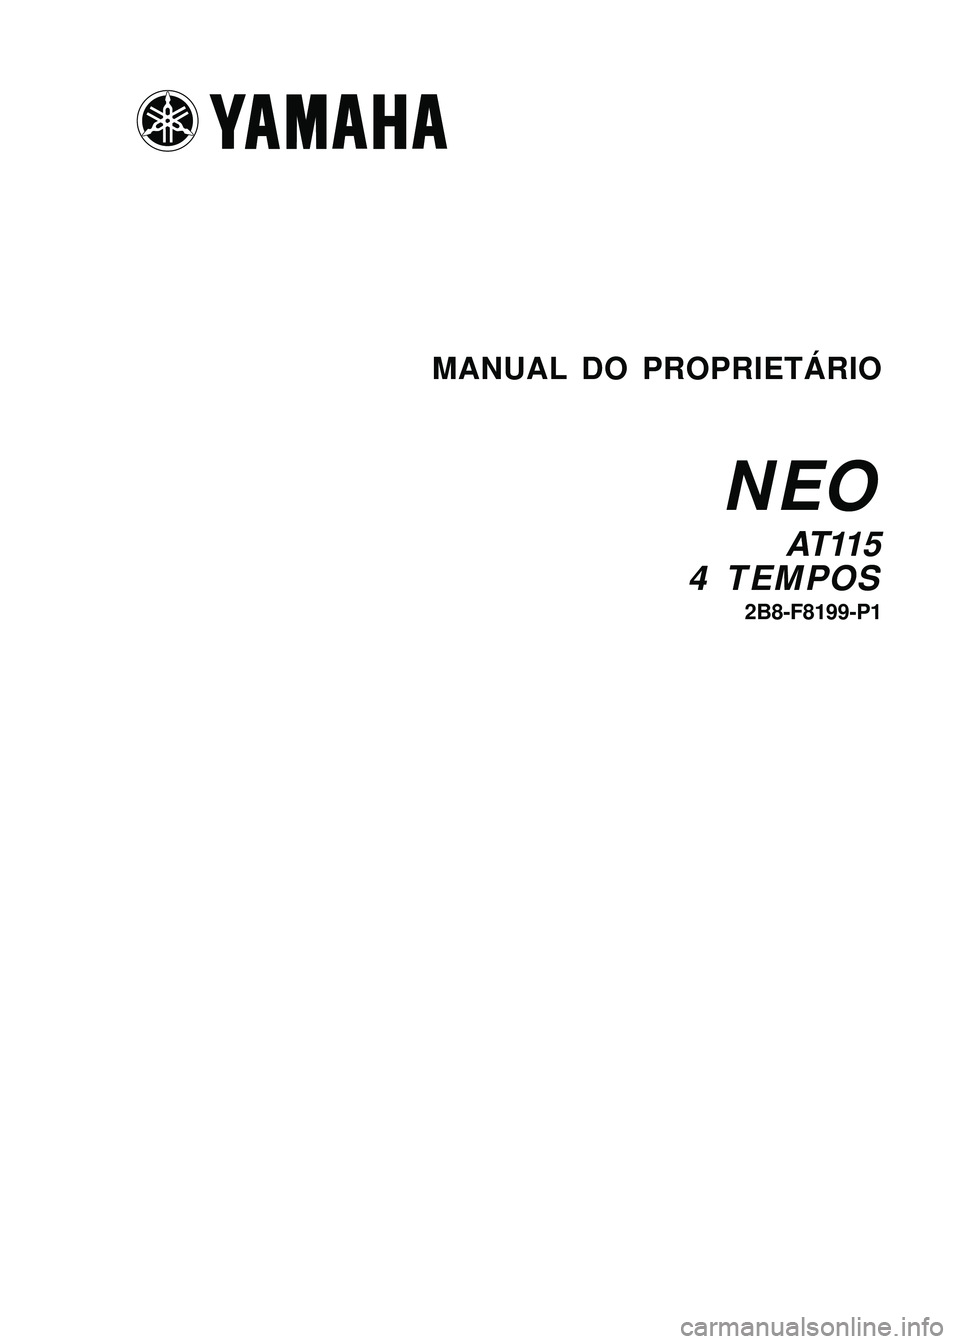 YAMAHA NEO115 2007  Manual de utilização (in Portuguese) I
I2B8-F8199-P1
AT 11 5
4 TEMPOS
MANUAL DO PROPRIETÁRIO
NEO
2B8-F8199-P1
AT 11 5
4 TEMPOS
MANUAL DO PROPRIETÁRIO
NEO 